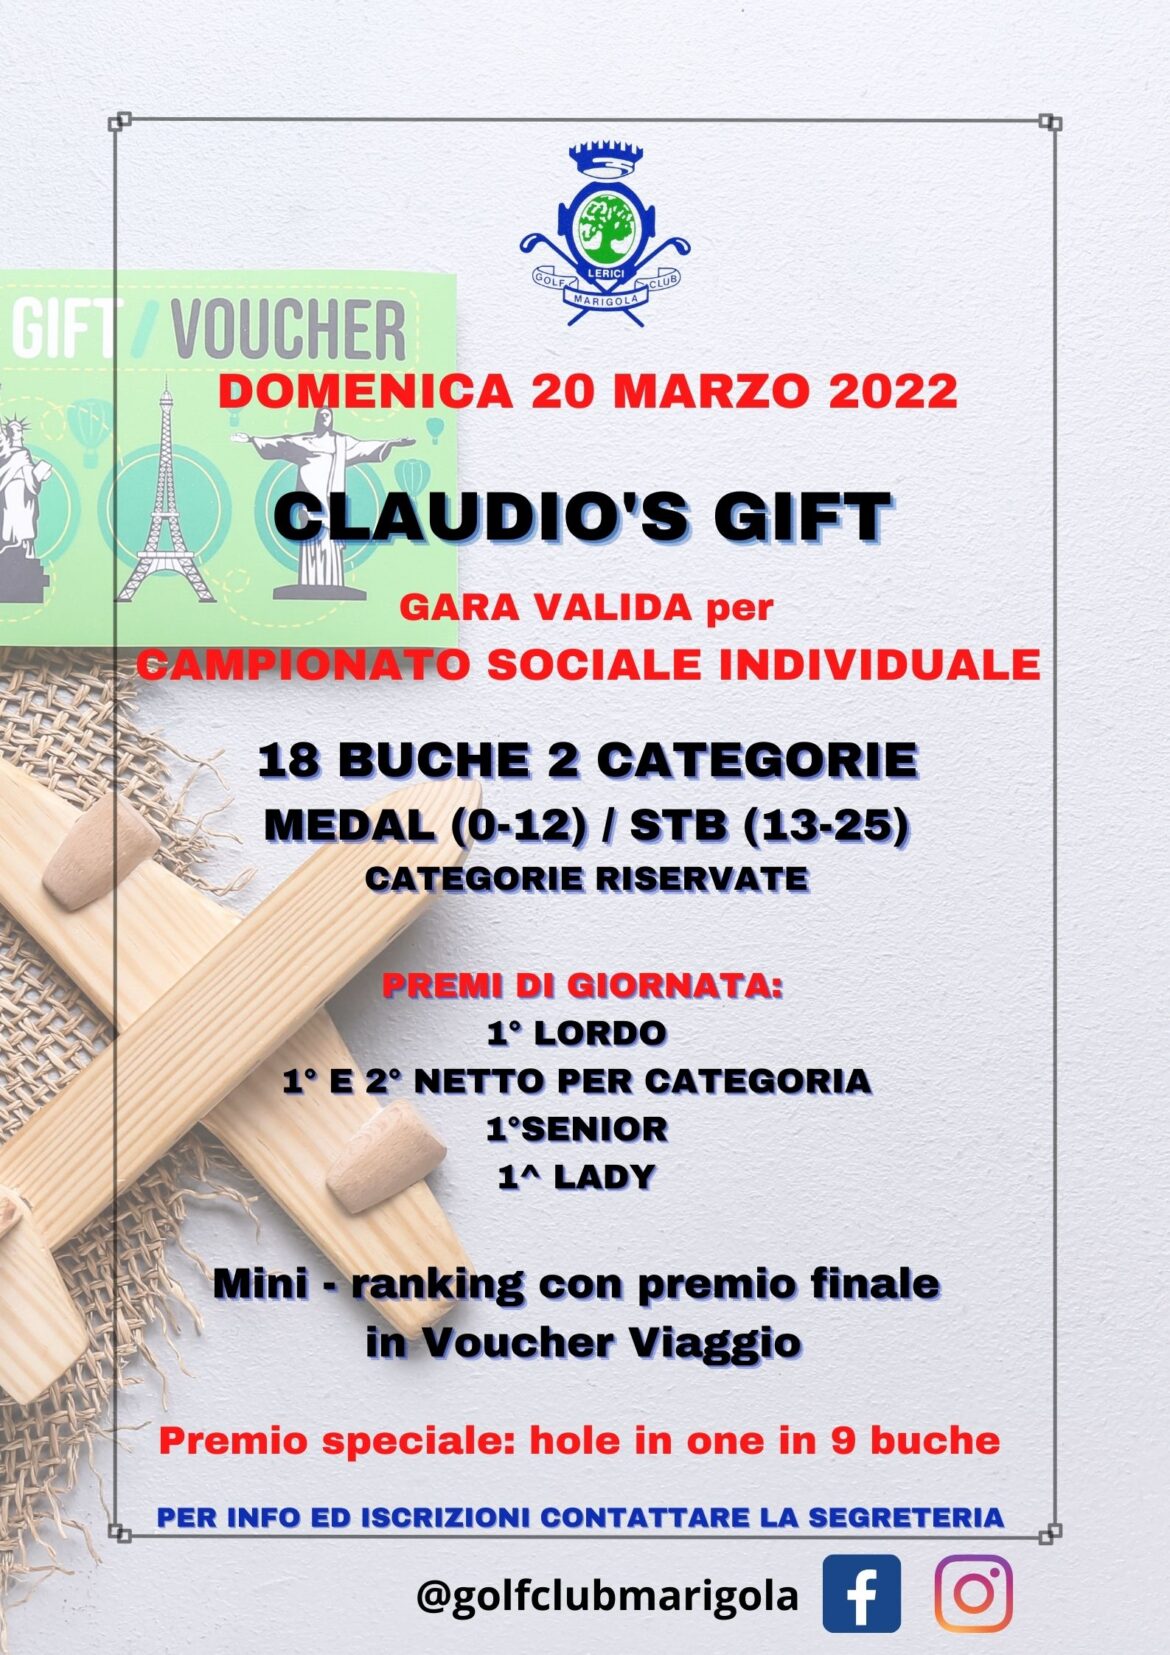 CLAUDIO’S GIFT- domenica 20 marzo 2022